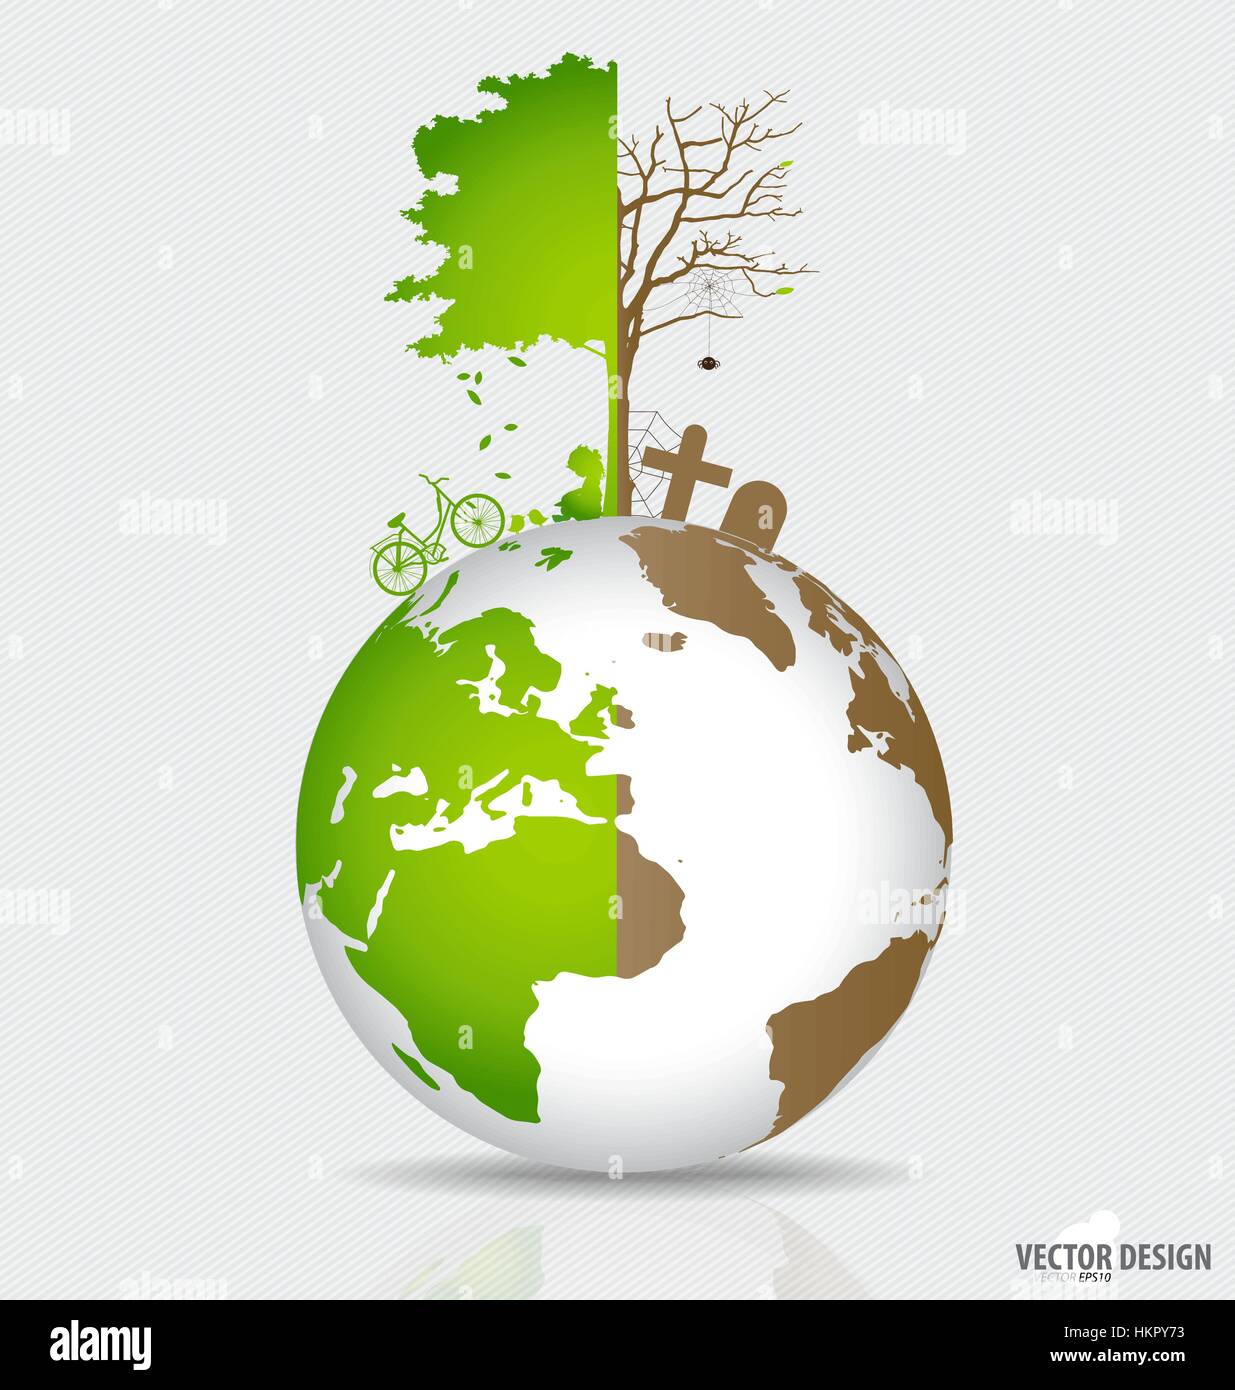 Rette die Welt, Baum auf einem abgeholzten Globus und grüne Welt. Vektor-Illustration. Stock Vektor